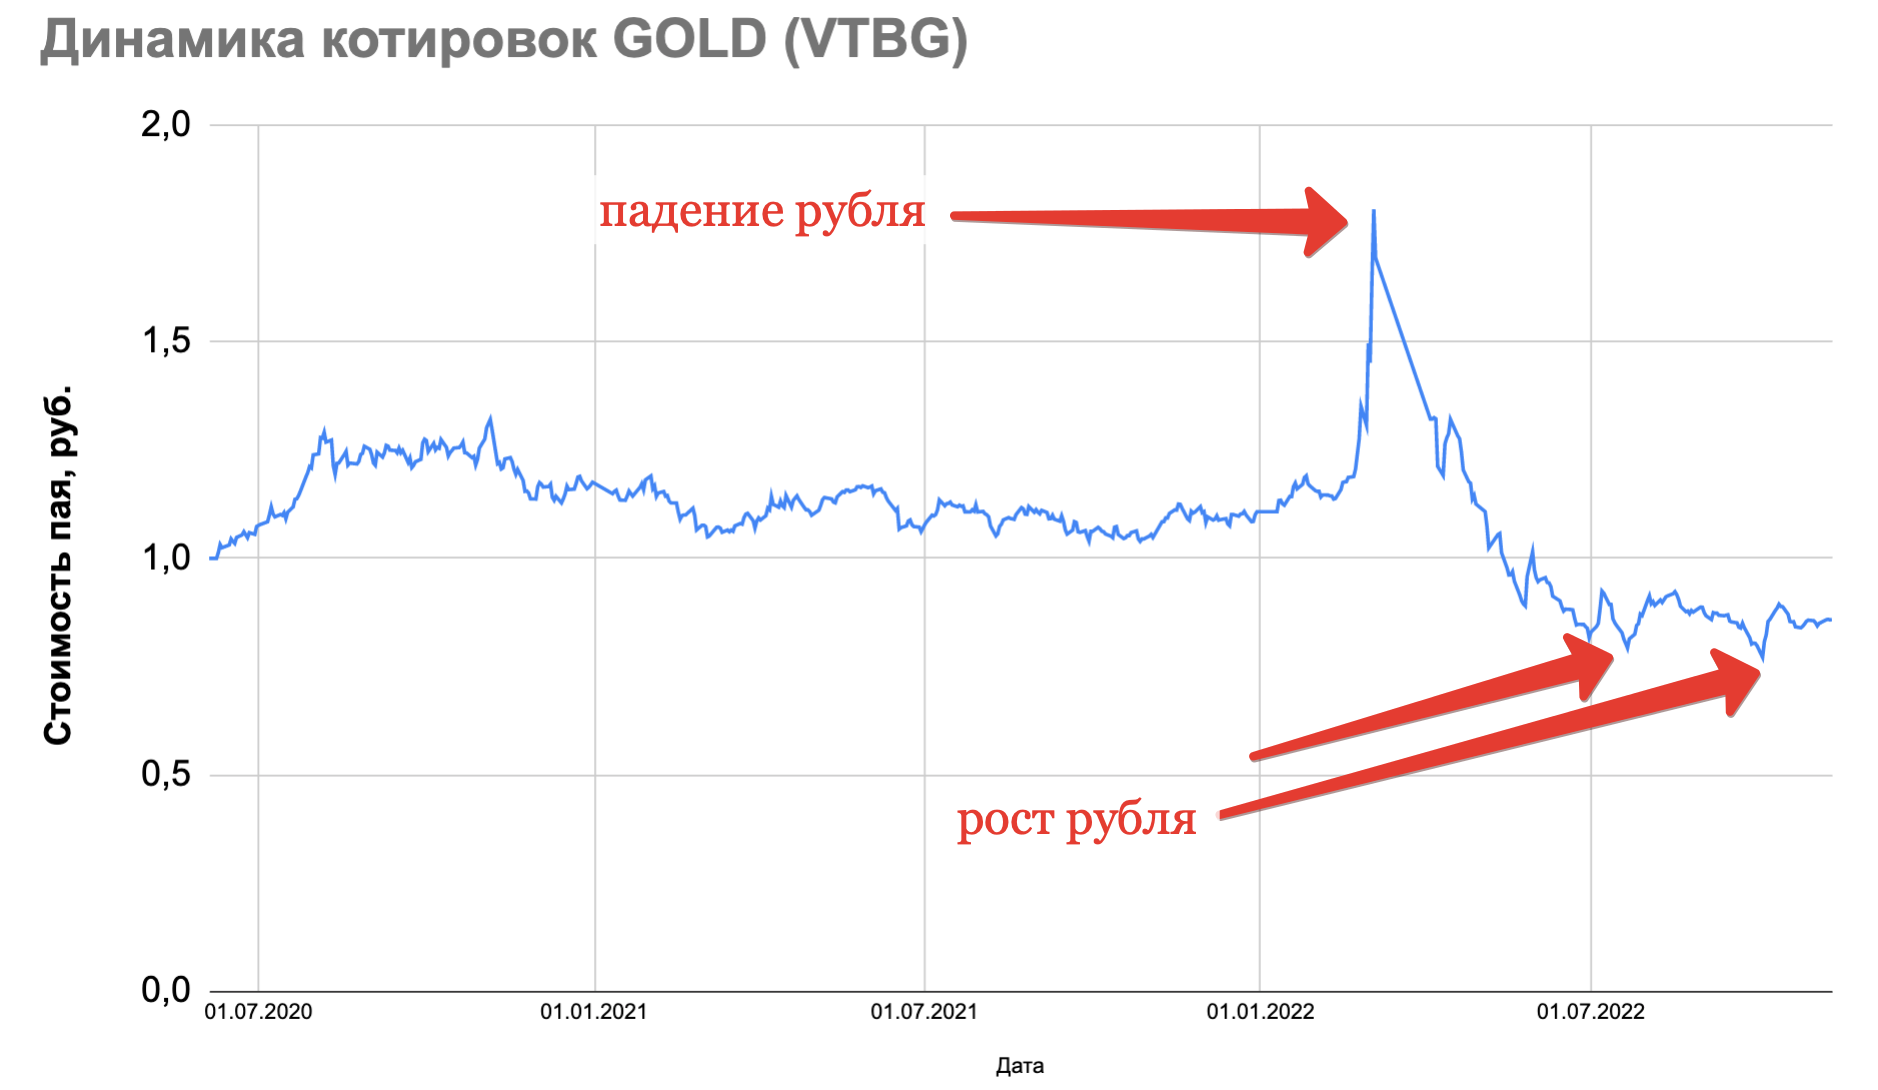 Втб фонд акций. Фонд акций ВТБ. Символ золота на бирже. Биржевое золото с 2014 года в рублях. Цена золота на бирже.